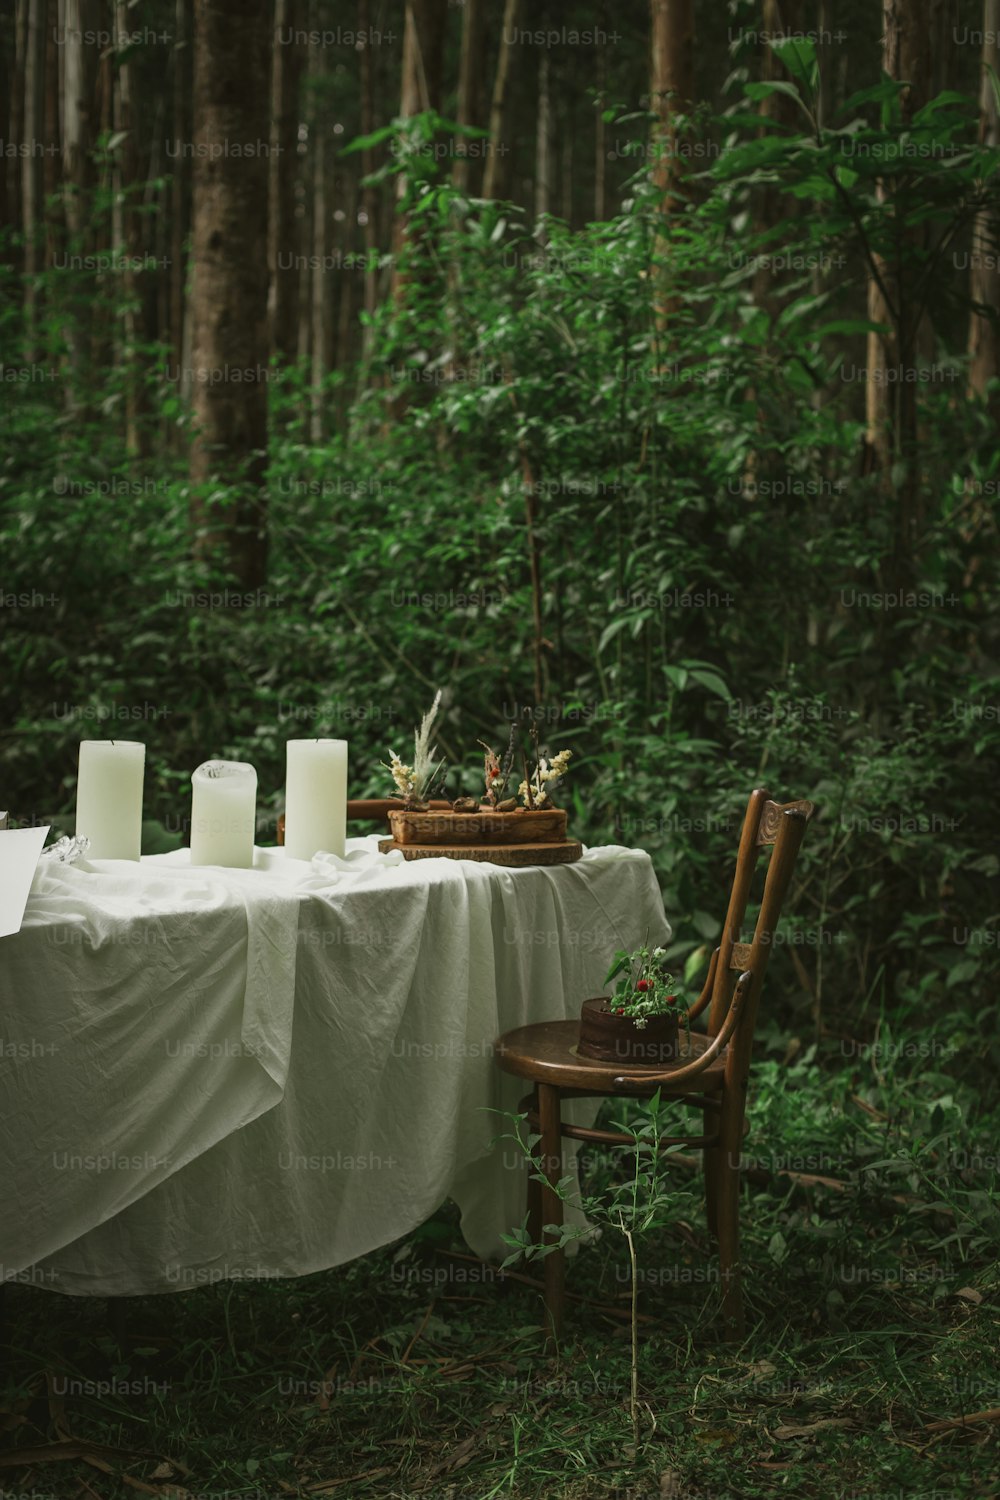 Ein Tisch mit Kerzen darauf mitten im Wald